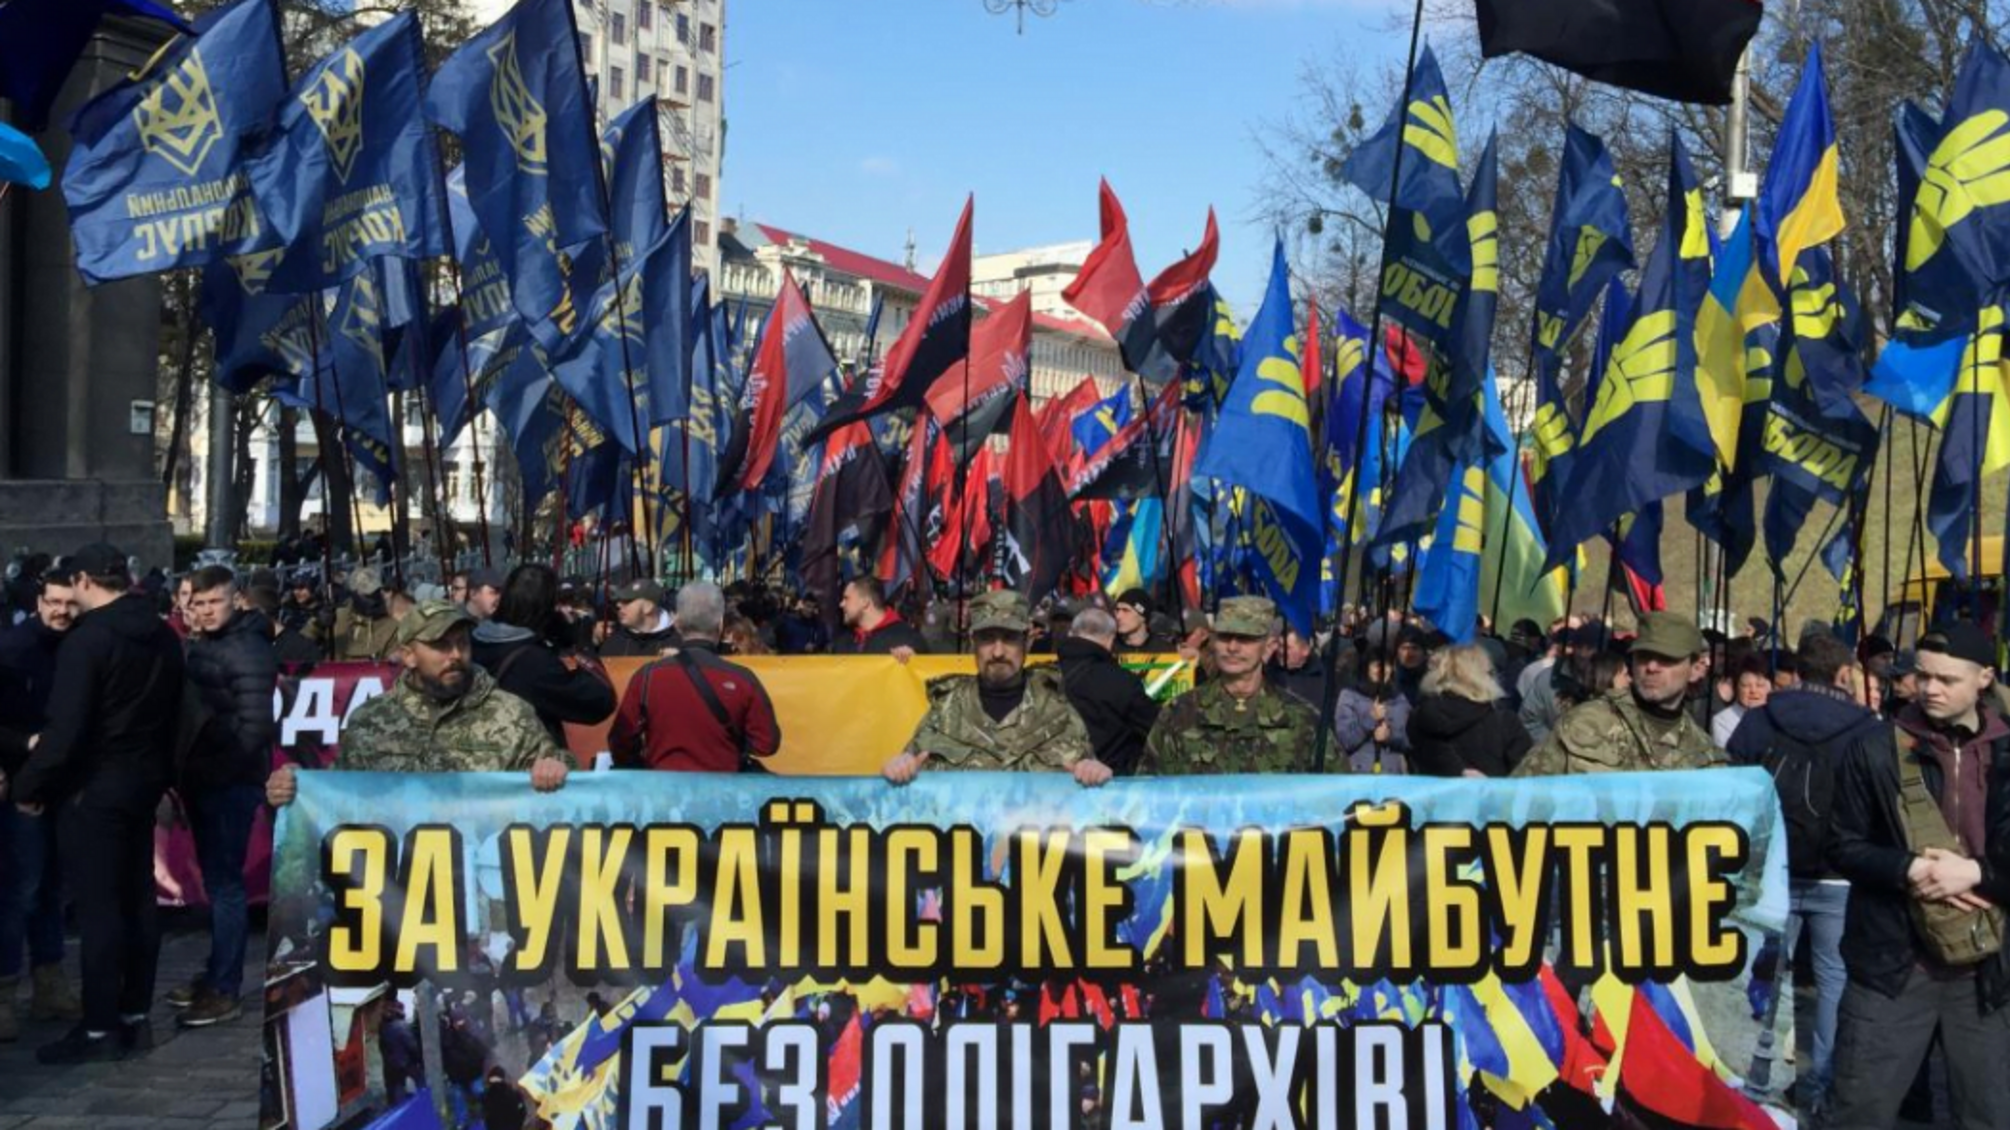 Поліцейські, сапери, кінологи: центр Києва заблокований через мітинг – кадри